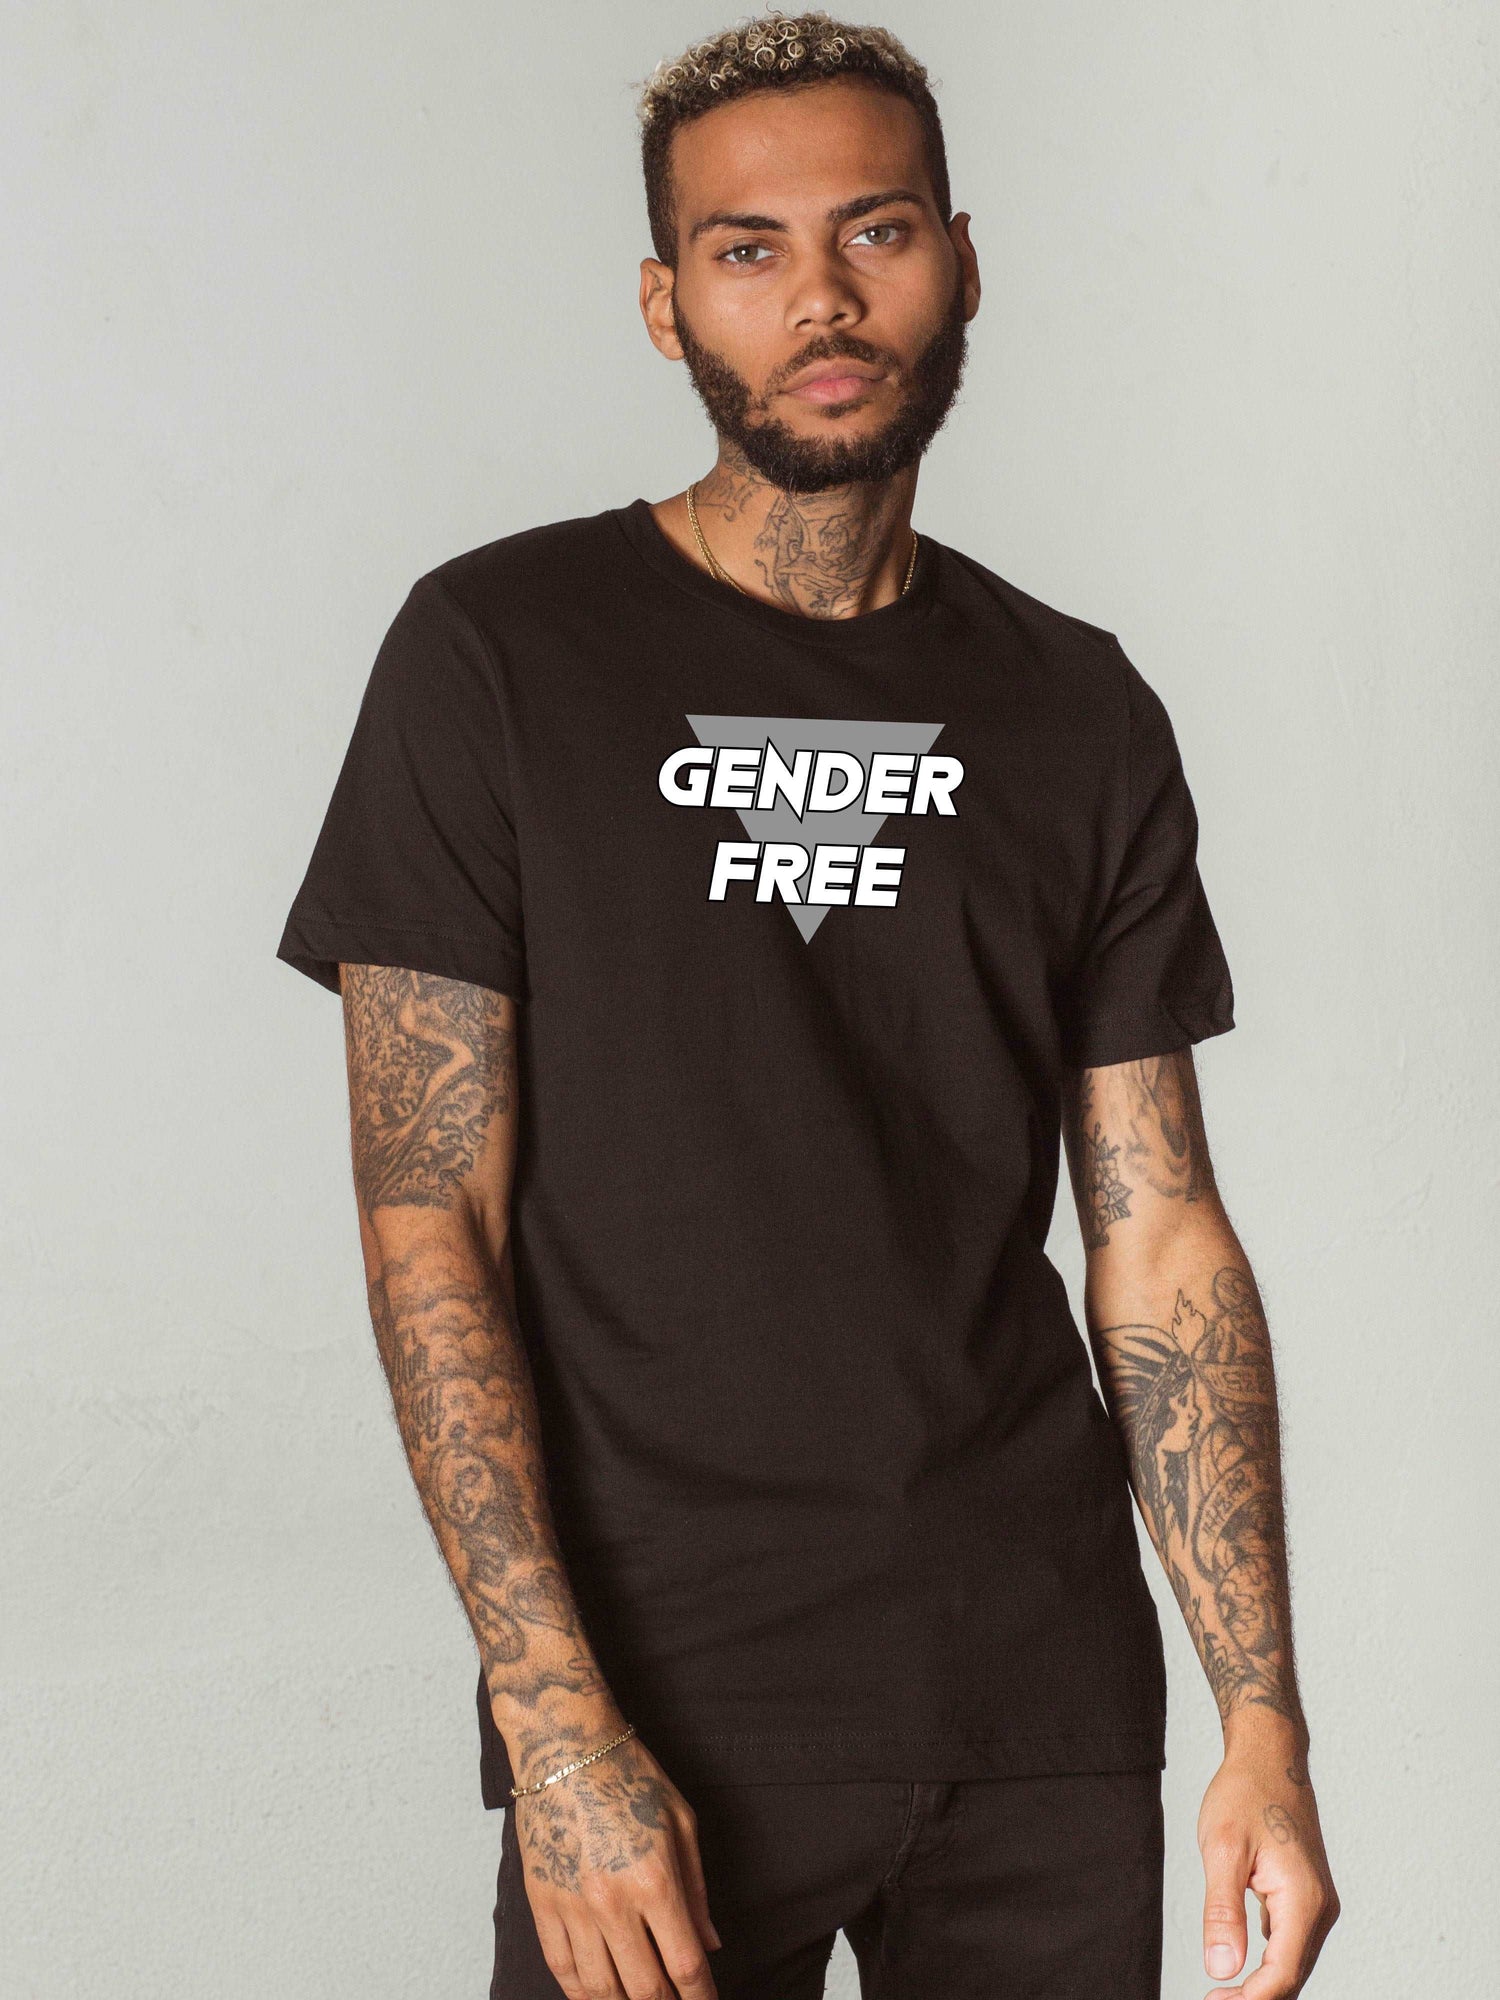 Gender Free T-Shirt